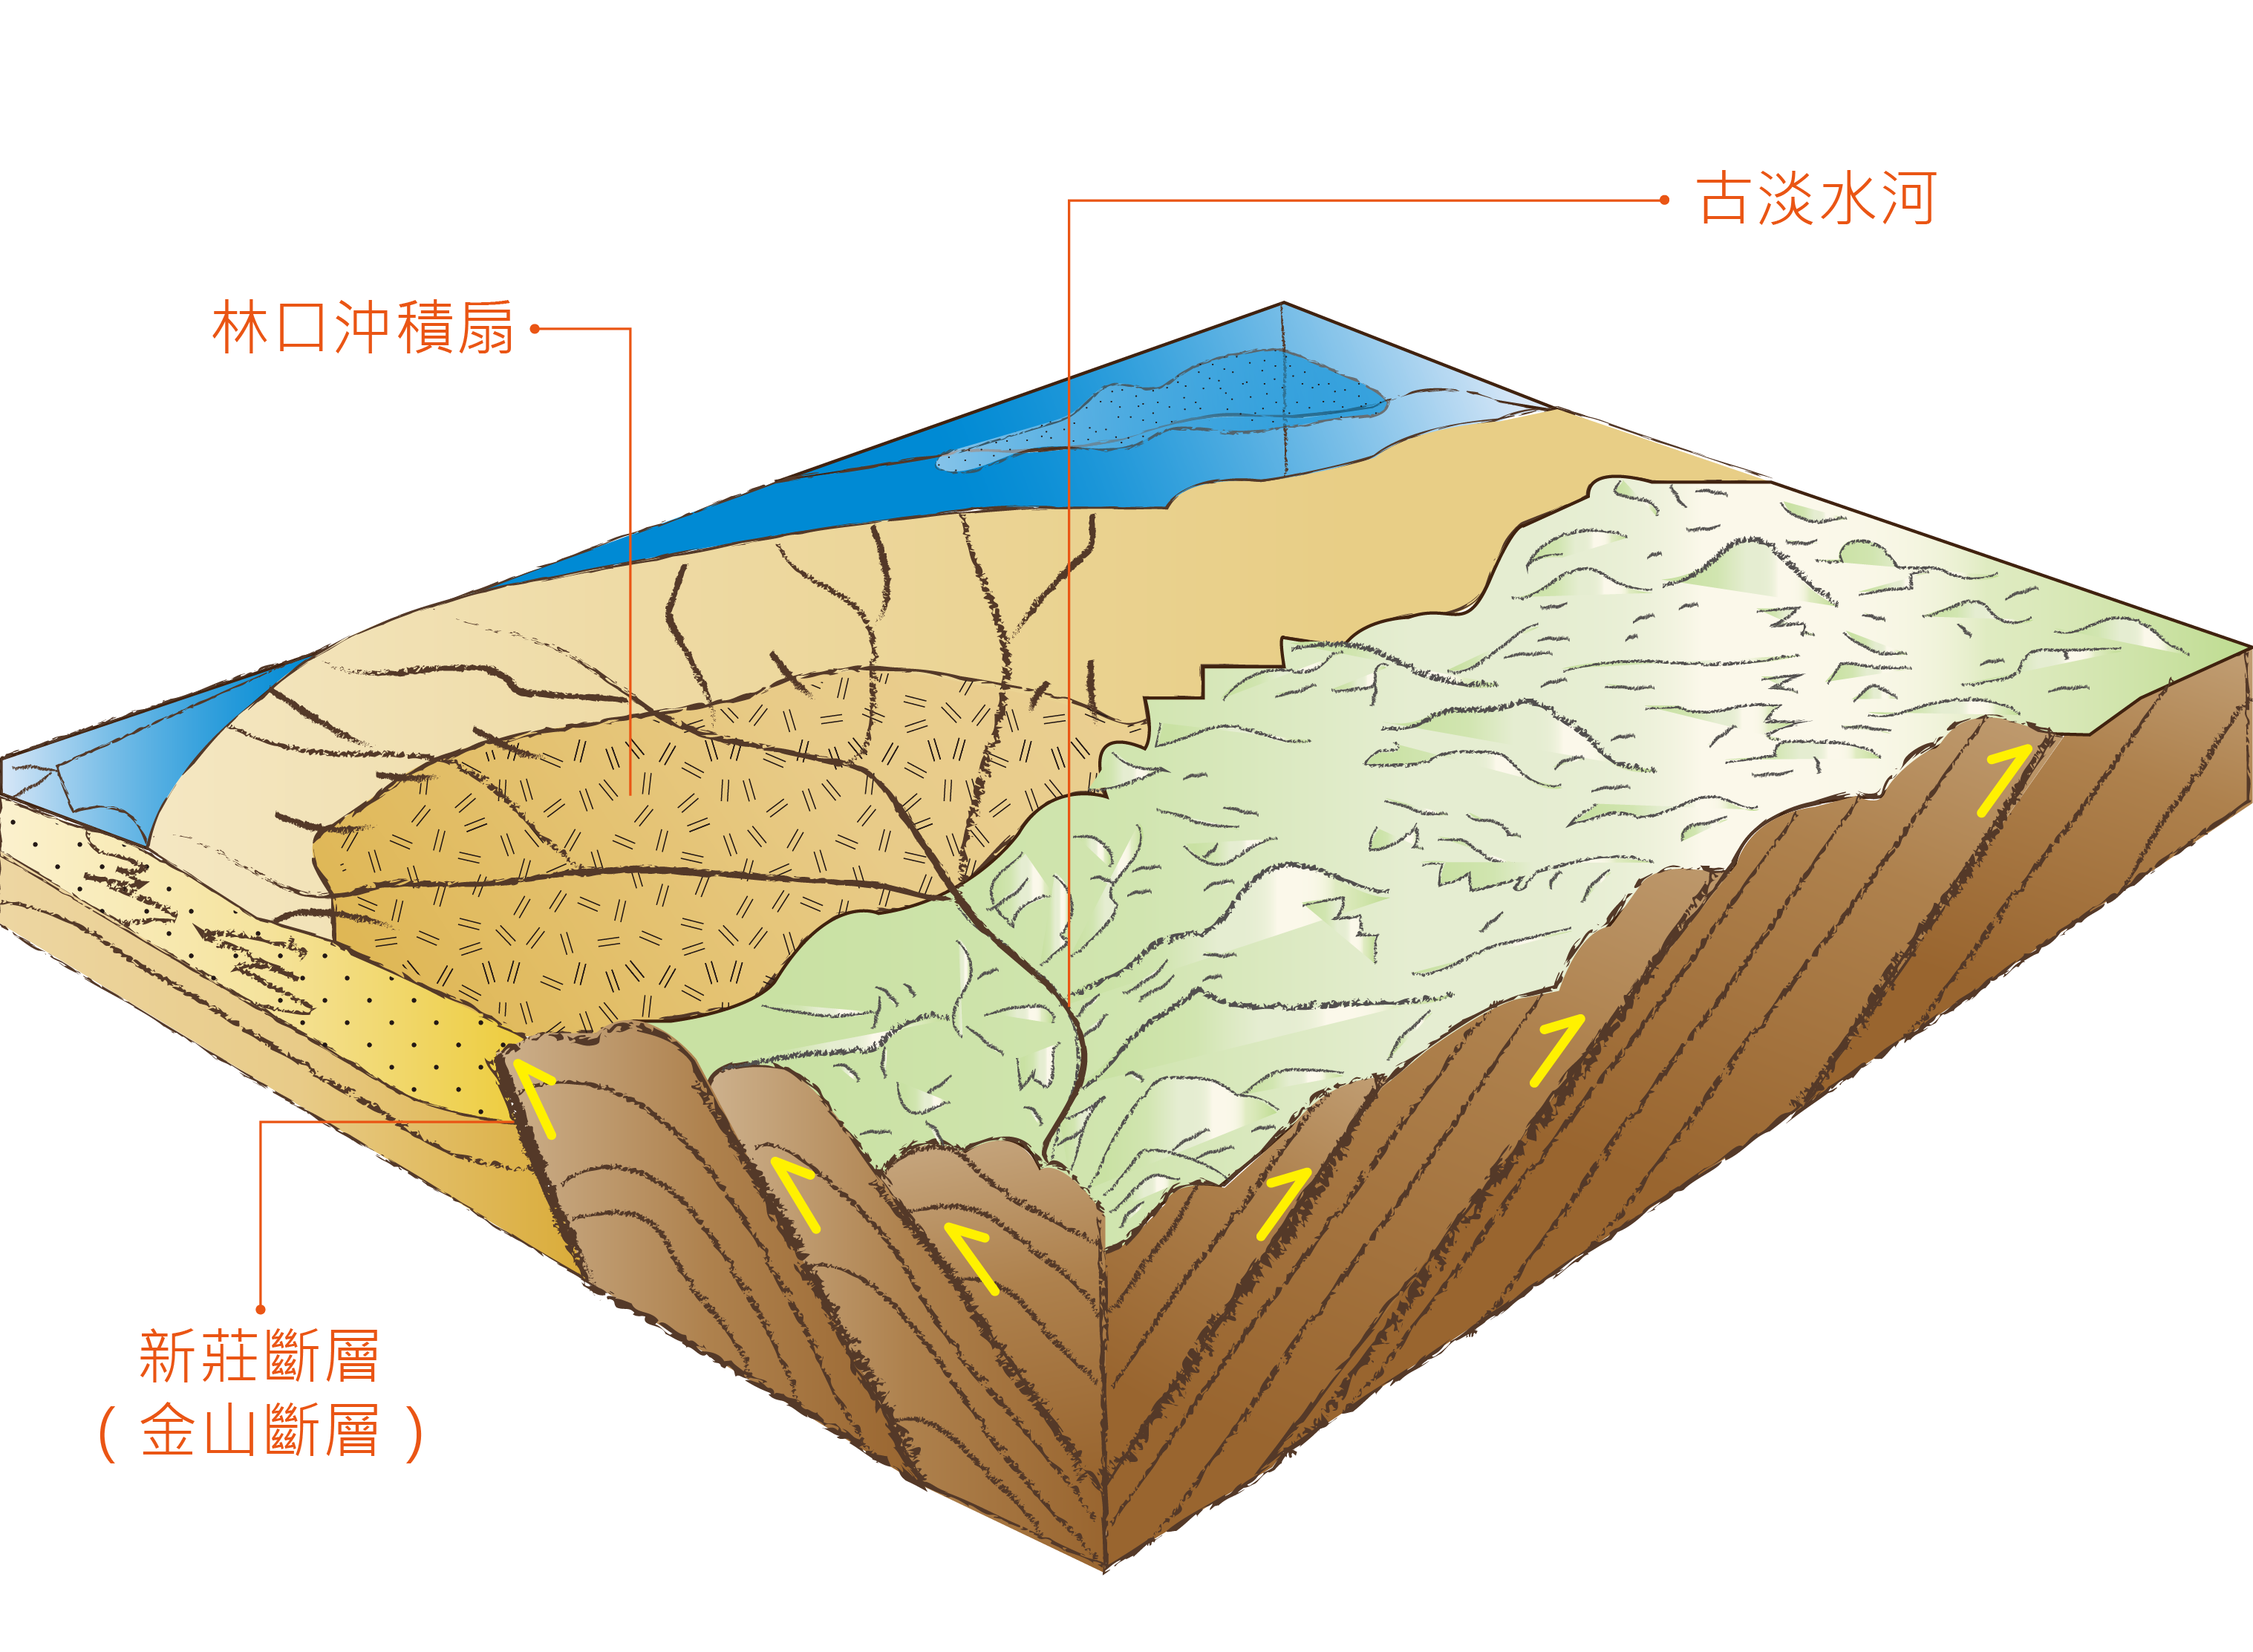 200萬年前《臺灣北部造山運動到達高峰》